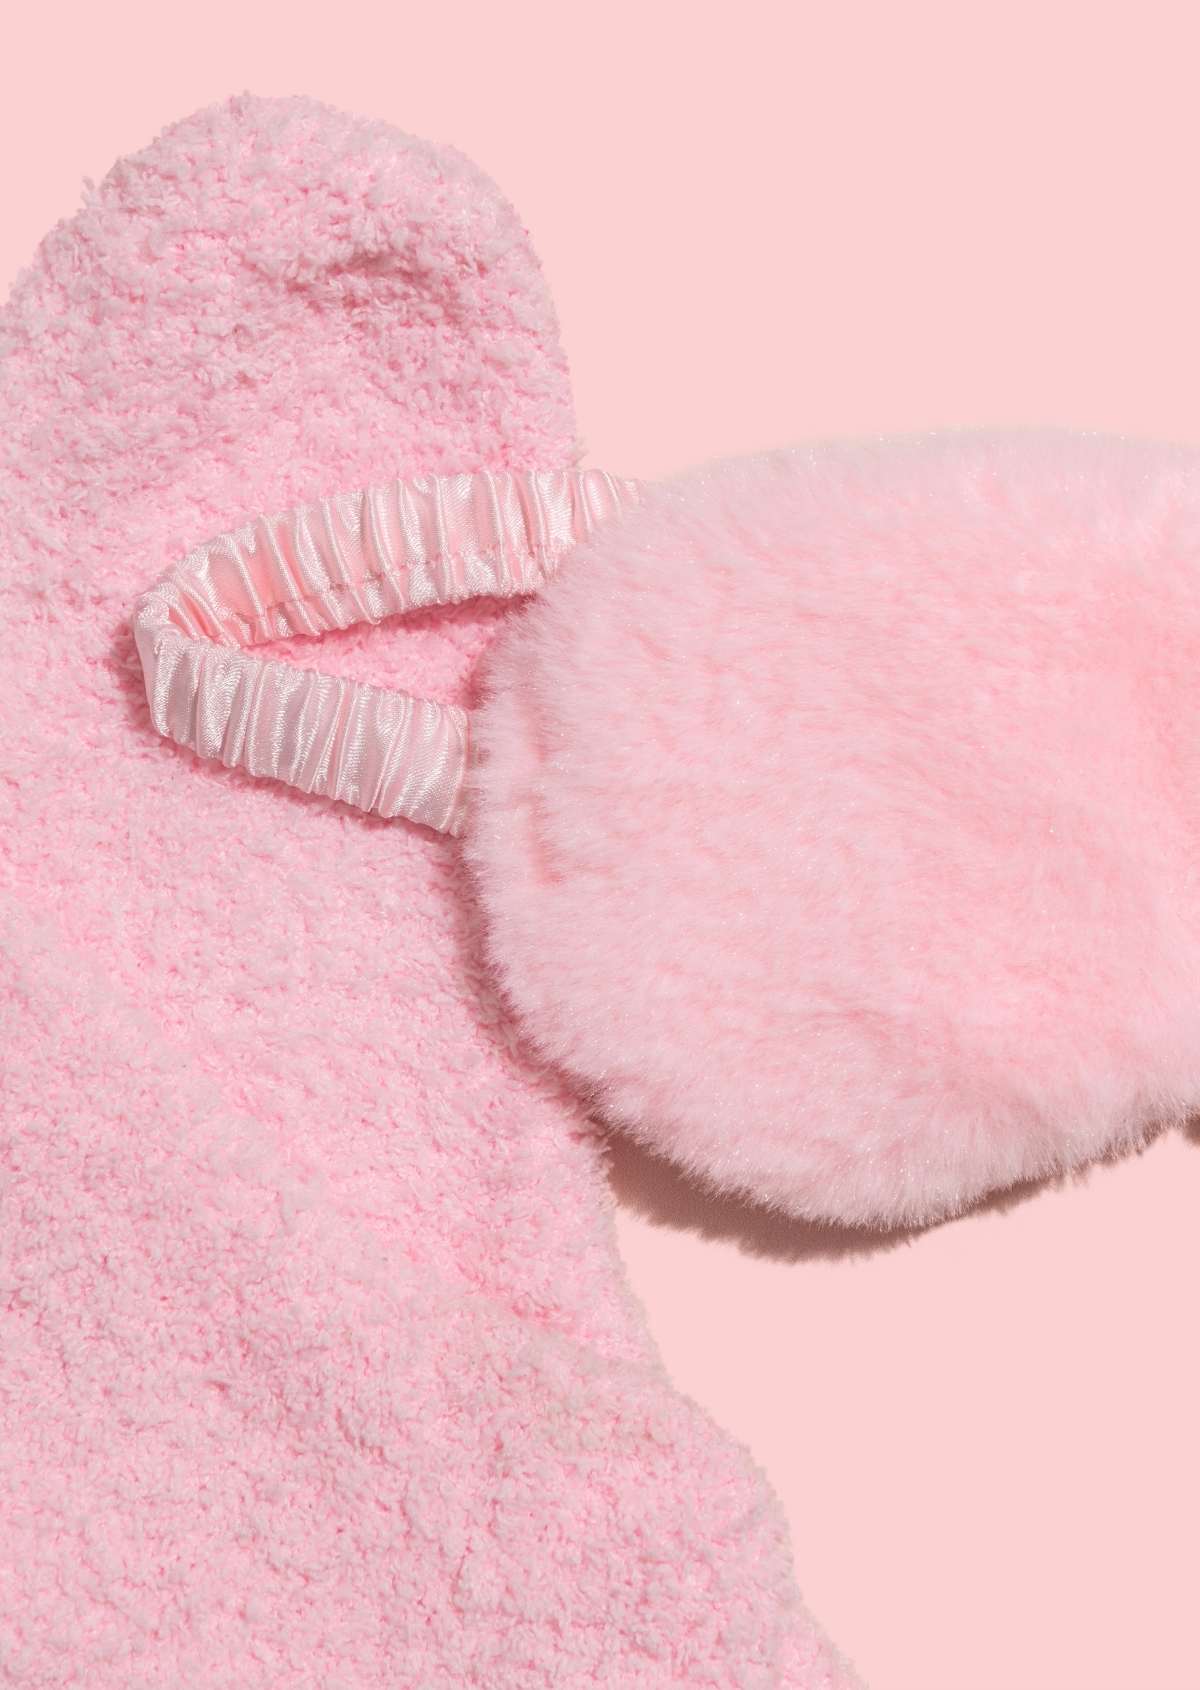 Pink Socks + Sleepmask